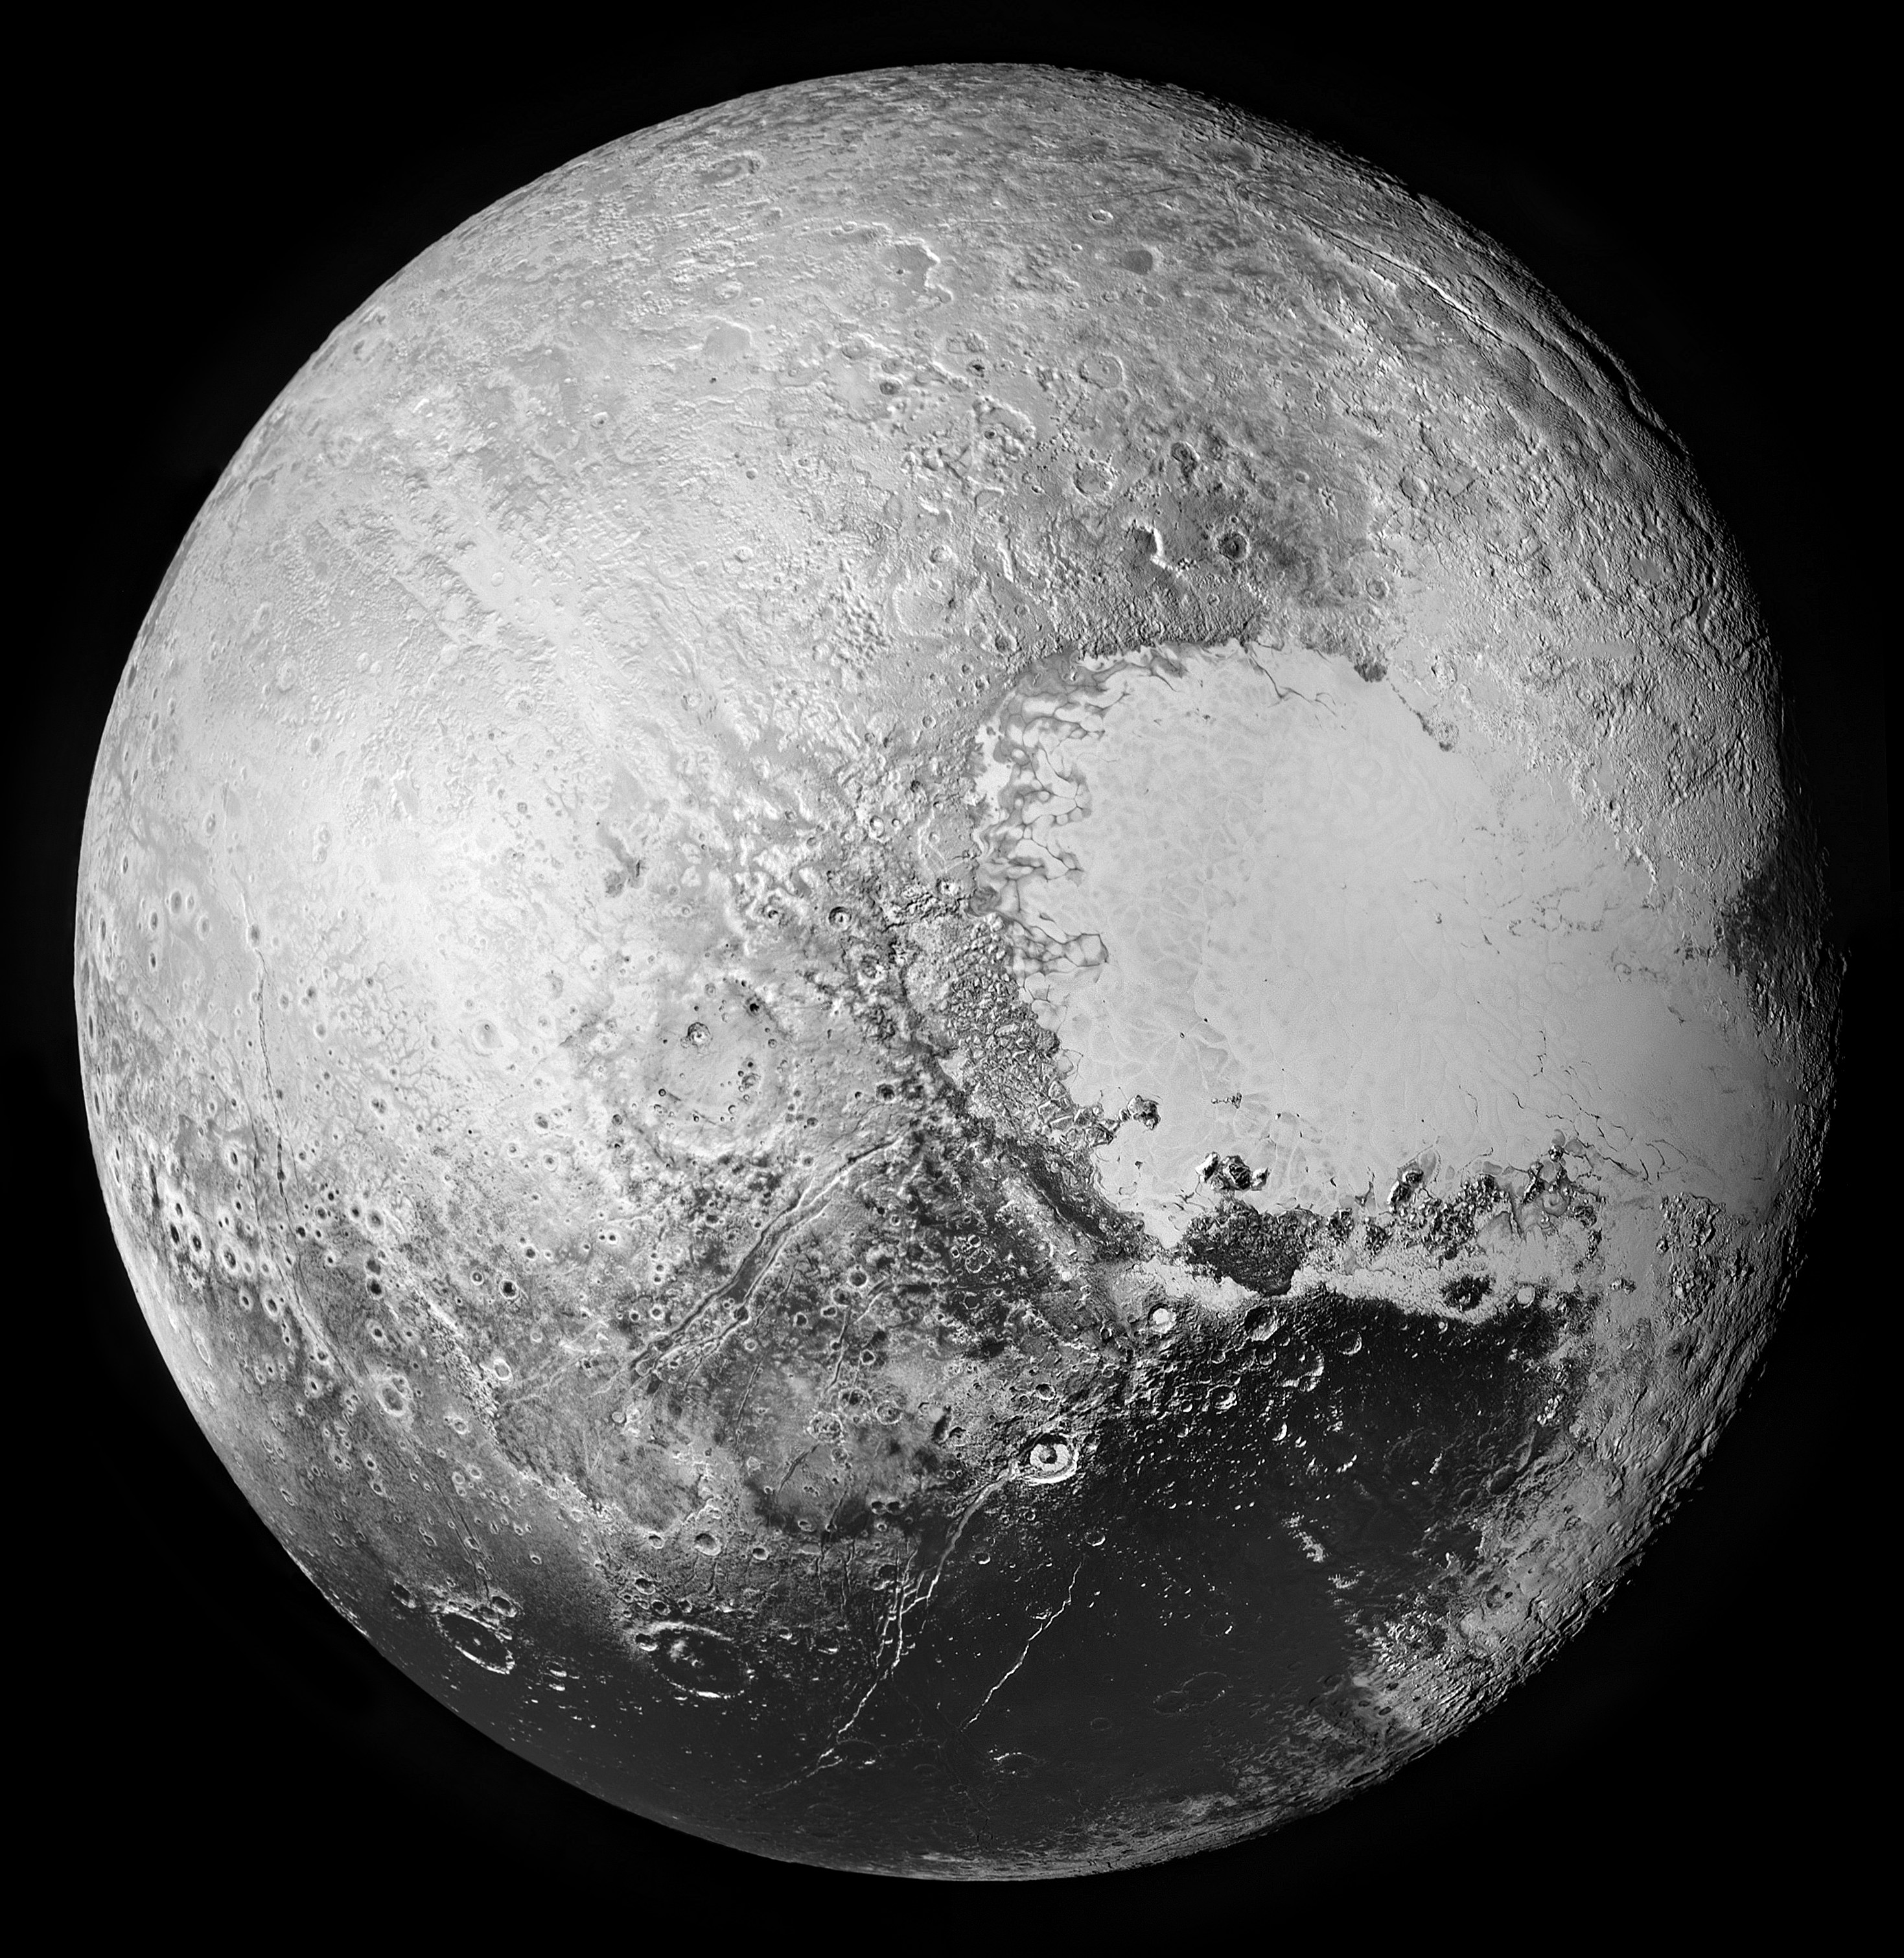 Pluto via New Horizons (composite)